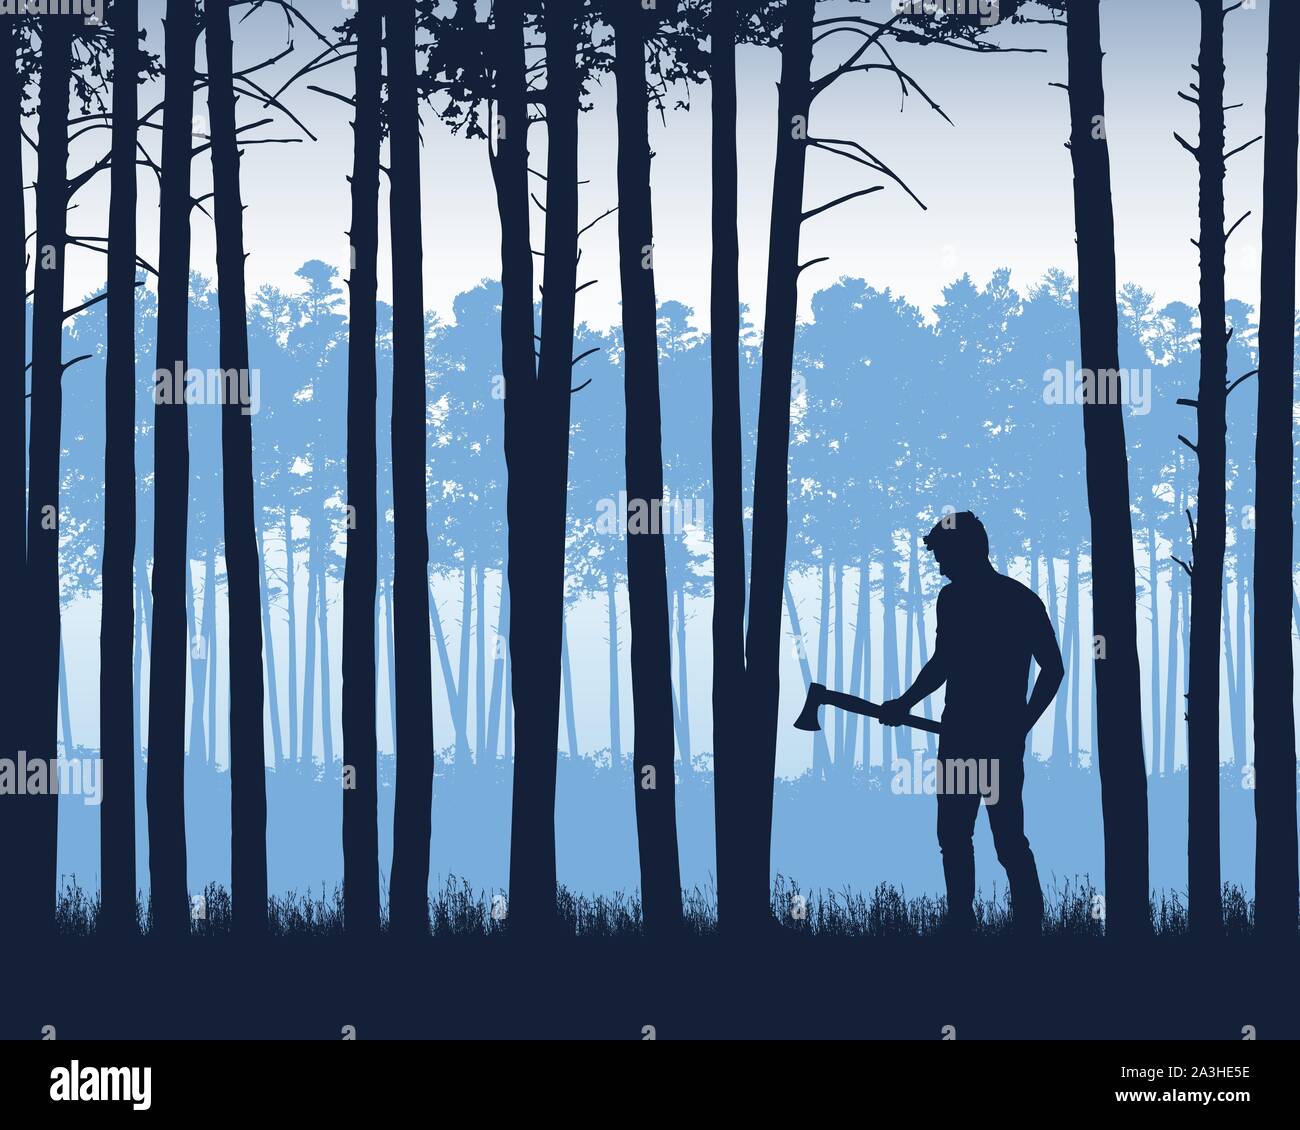 Realistische Darstellung der Landschaft mit Nadelwald mit Pinien unter blauem Himmel. Mann mit Axt oder Holzfäller steht in Gras-Vektor Stock Vektor